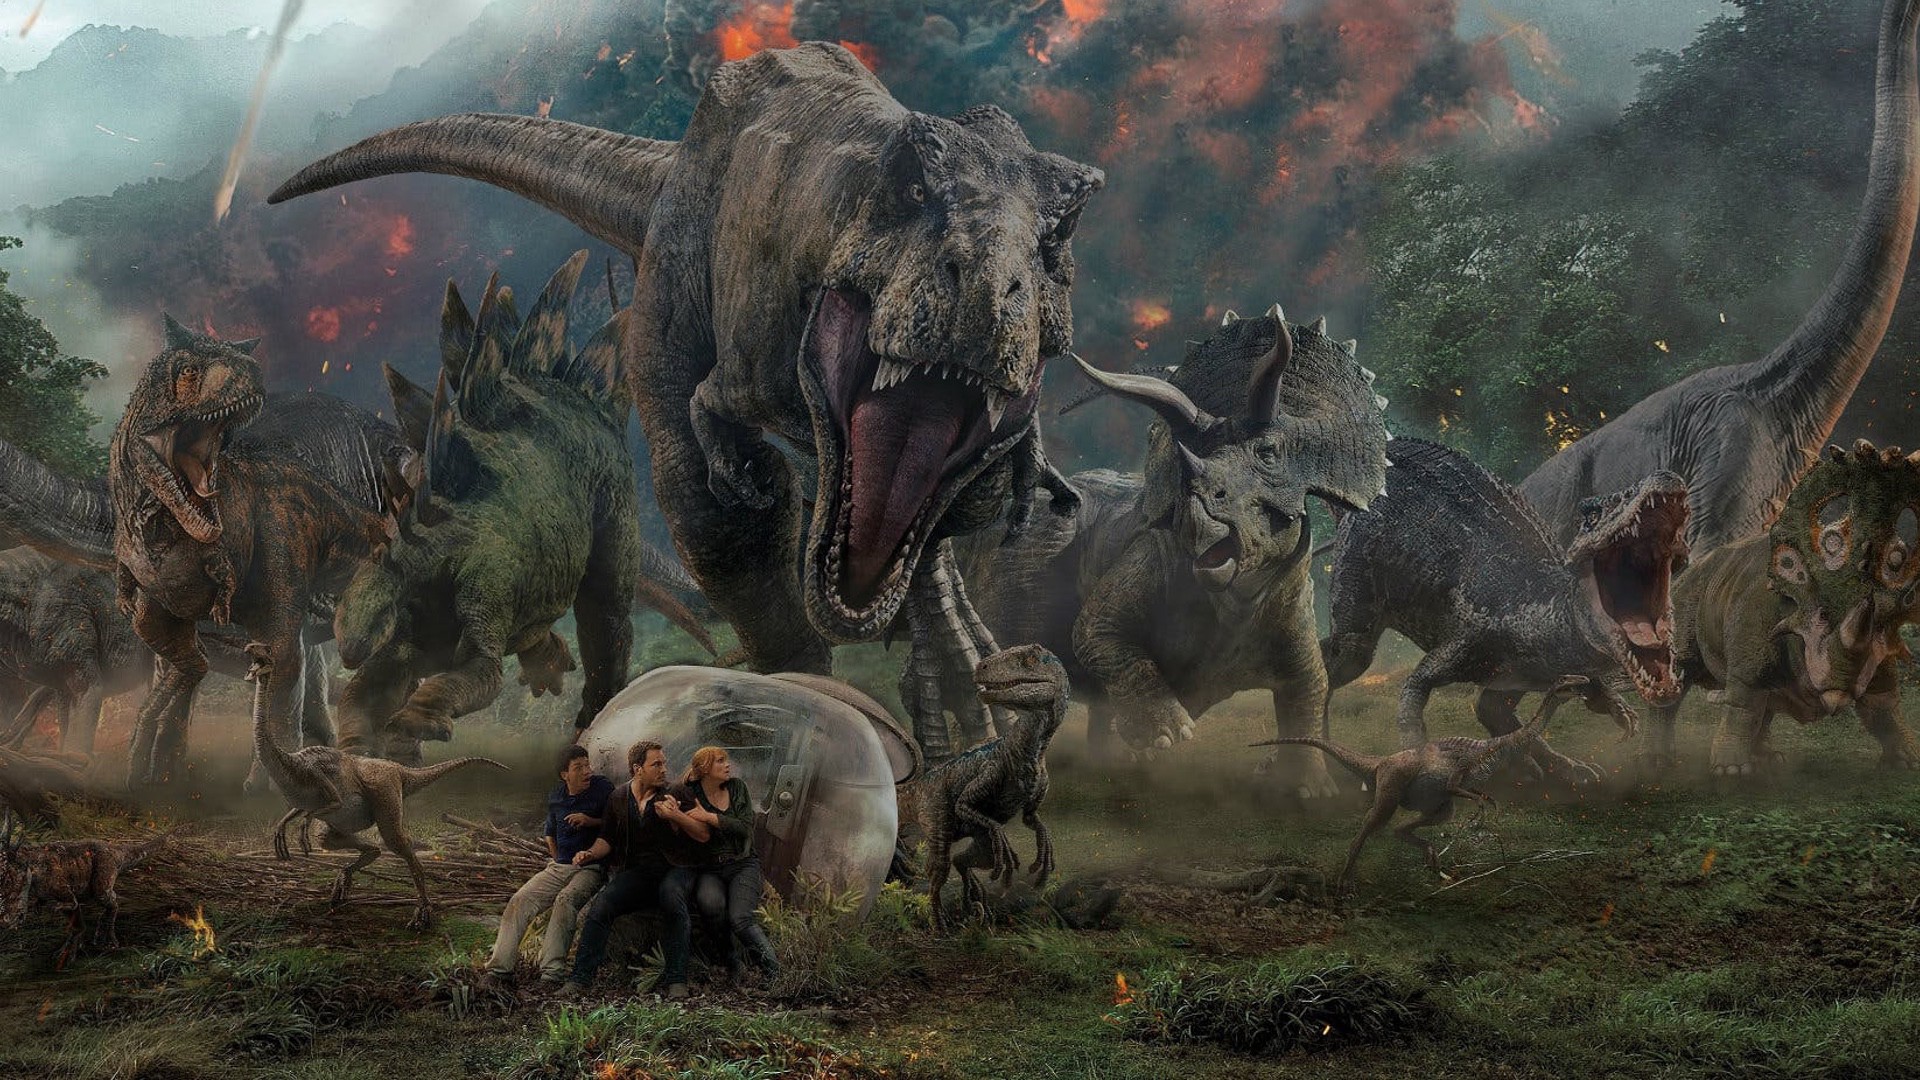 《侏罗纪公园3》将会是侏罗纪系列电影的一个全新开端!